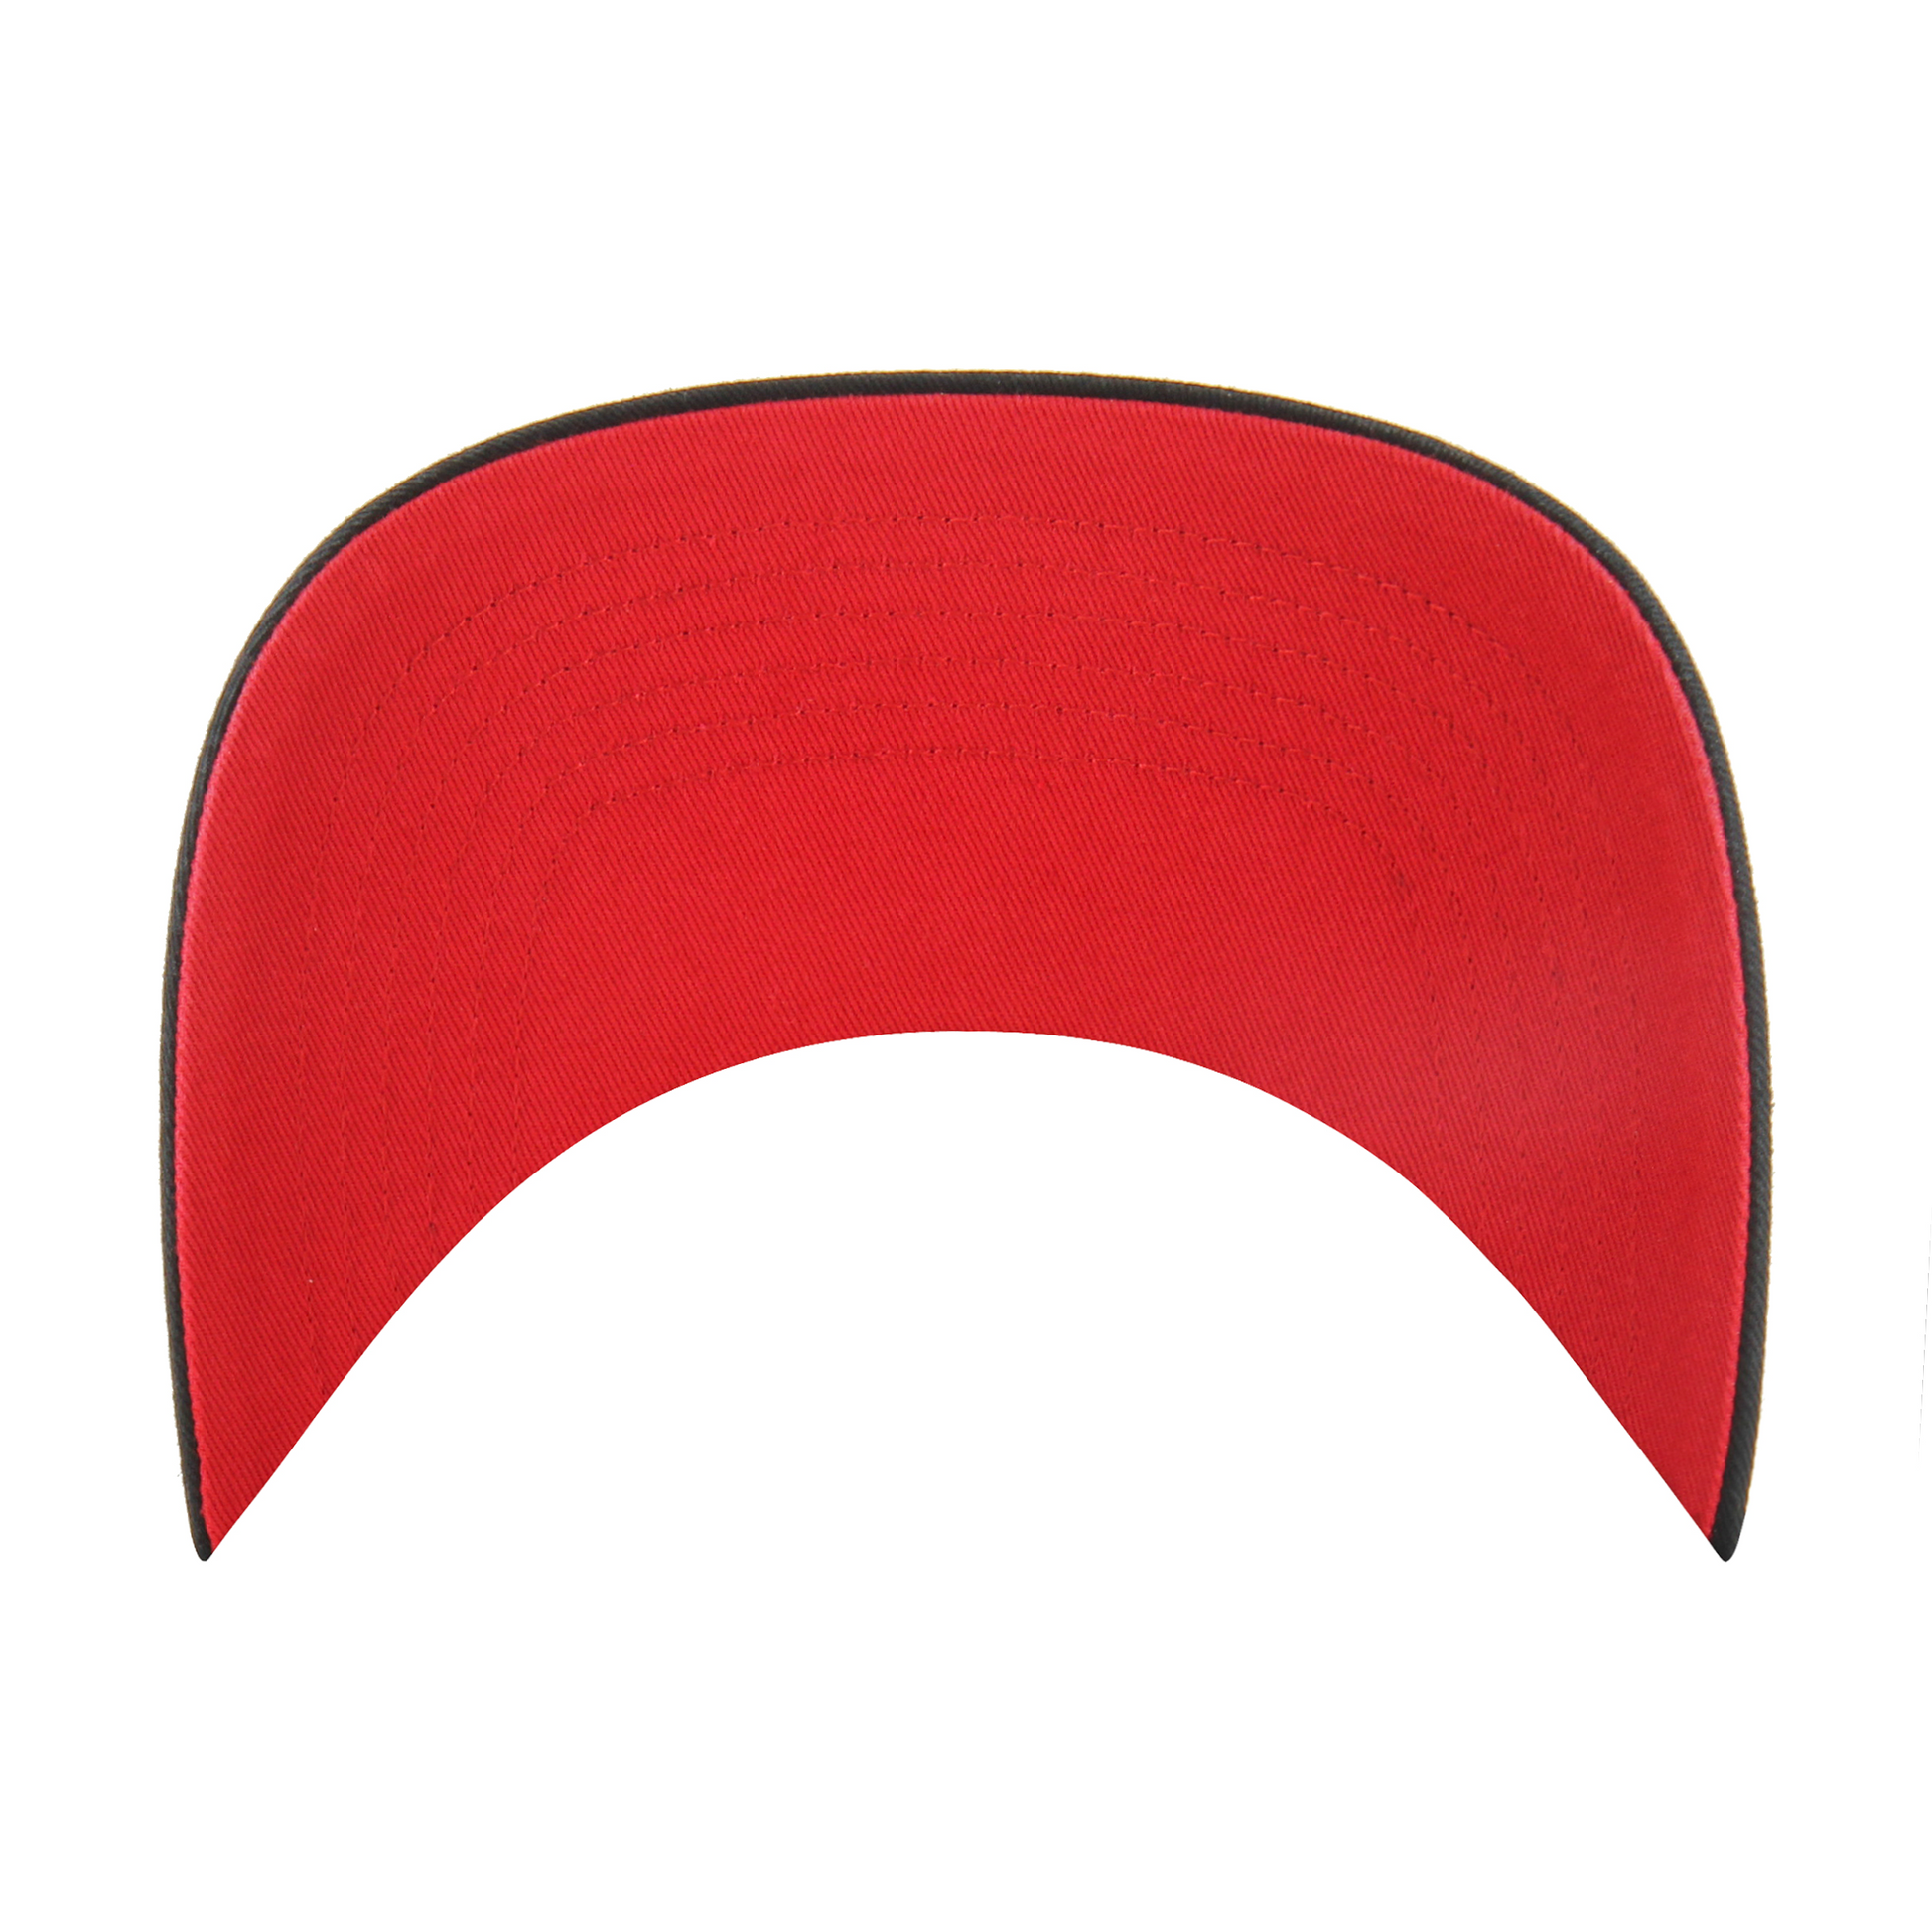 Under: Red underbrim of cap